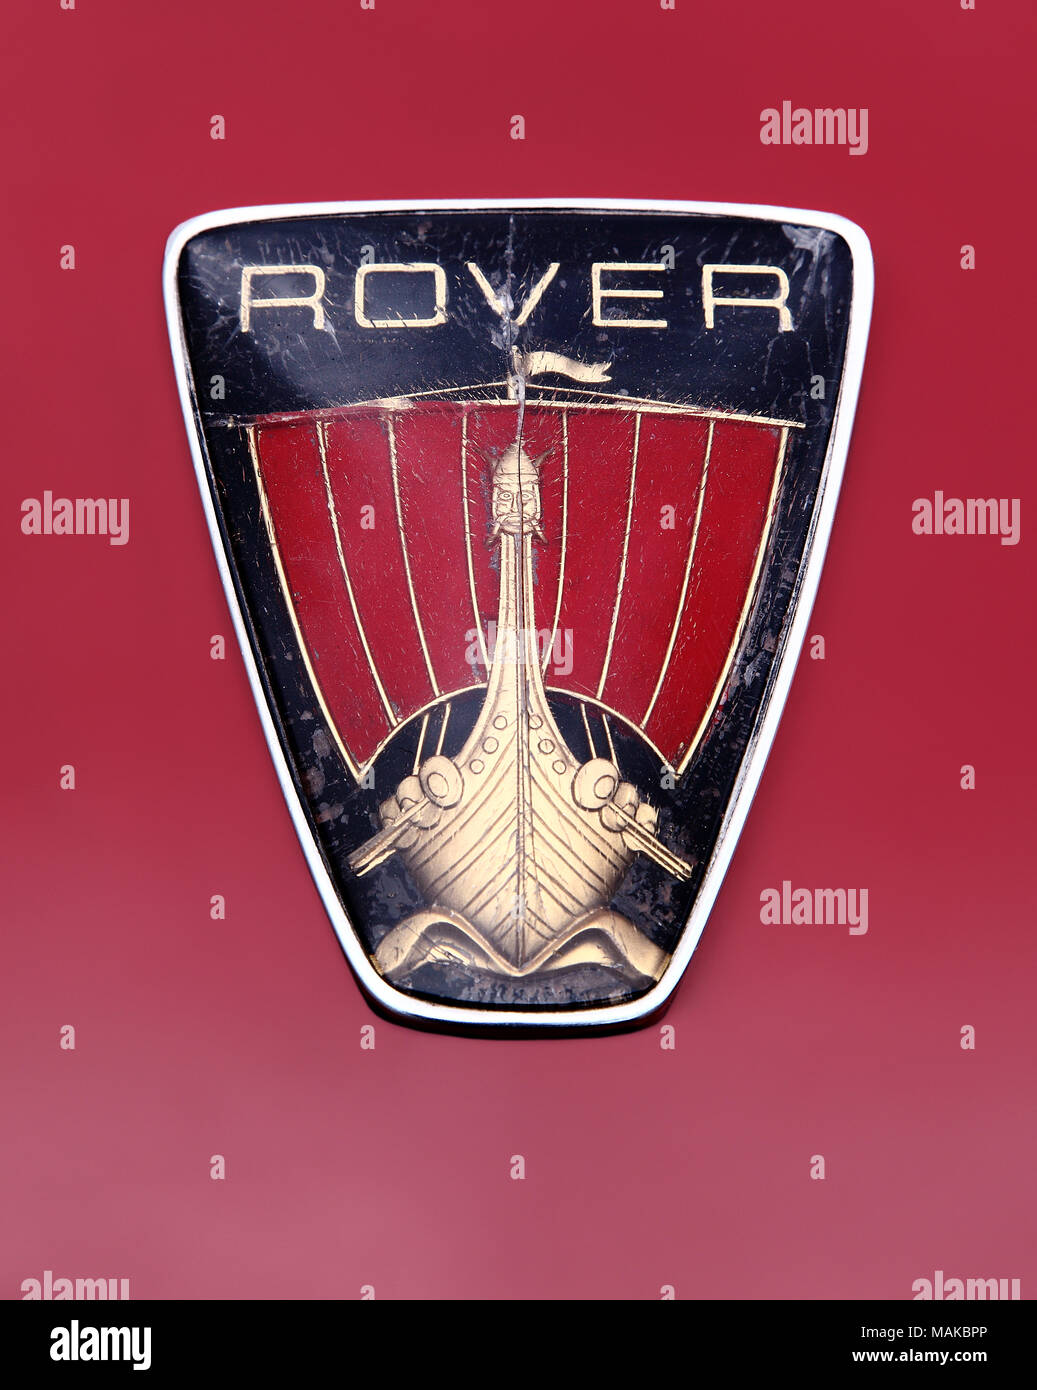 https://c8.alamy.com/compde/makbpp/rover-viking-schiff-logo-abzeichen-oder-kuhlerfigur-die-jahrzehnte-der-verschleiss-makbpp.jpg